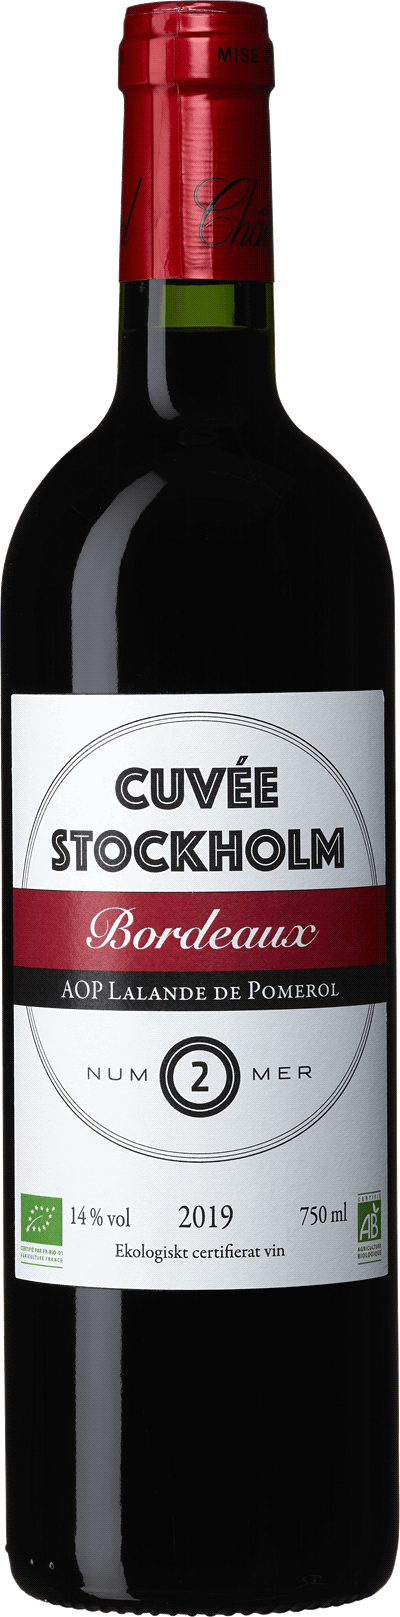 Cuvée Stockholm Nr 2 Lalande de Pomerol Bordeaux